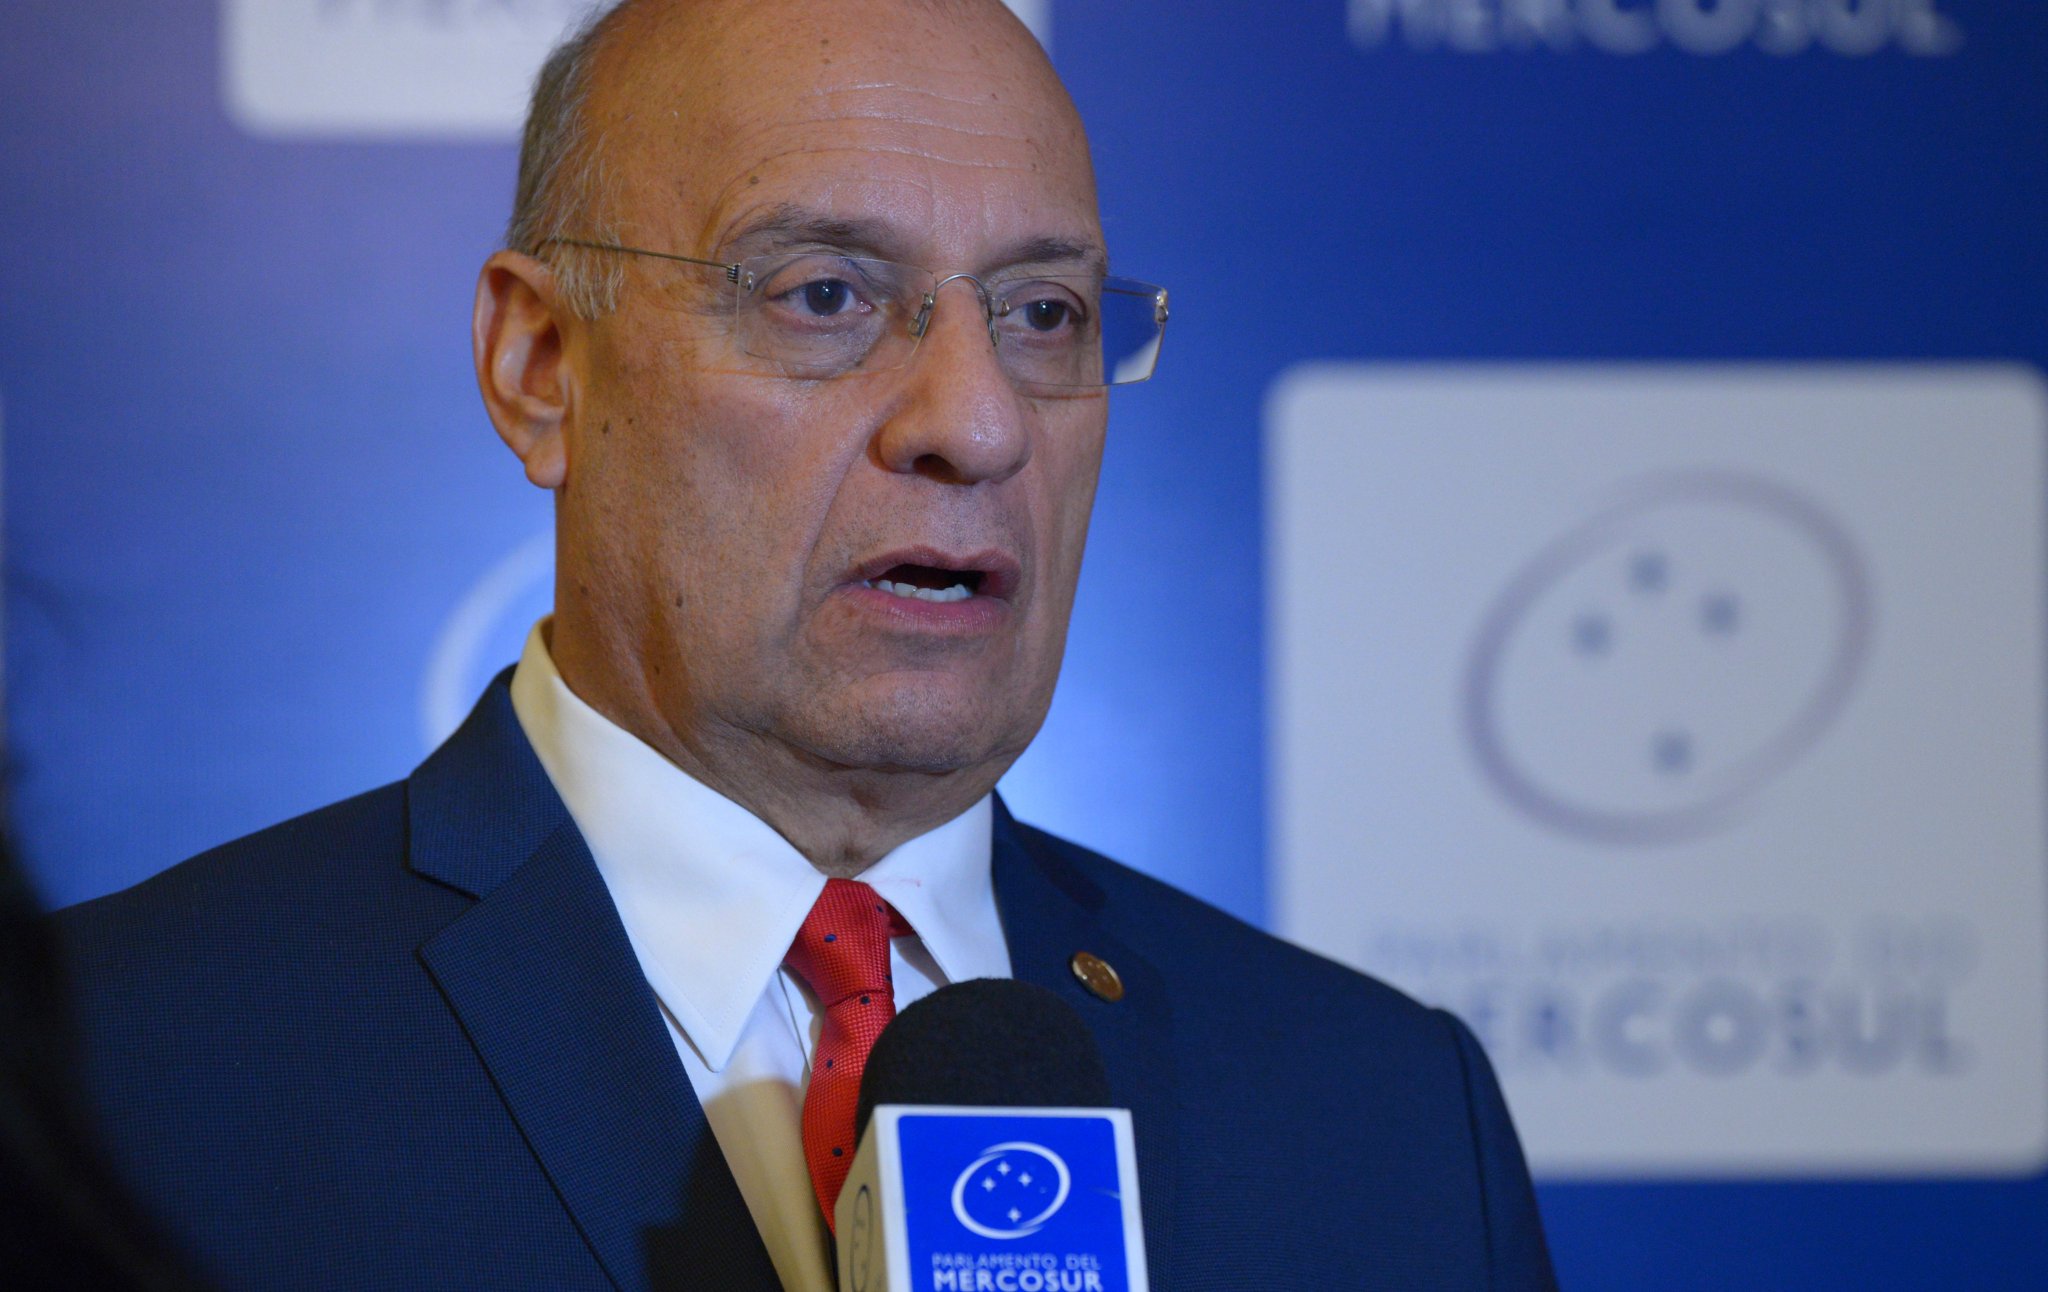 “Canciller de la República debe renunciar por su ineptitud frente a Mercosur”, dice diputado Williams Dávila